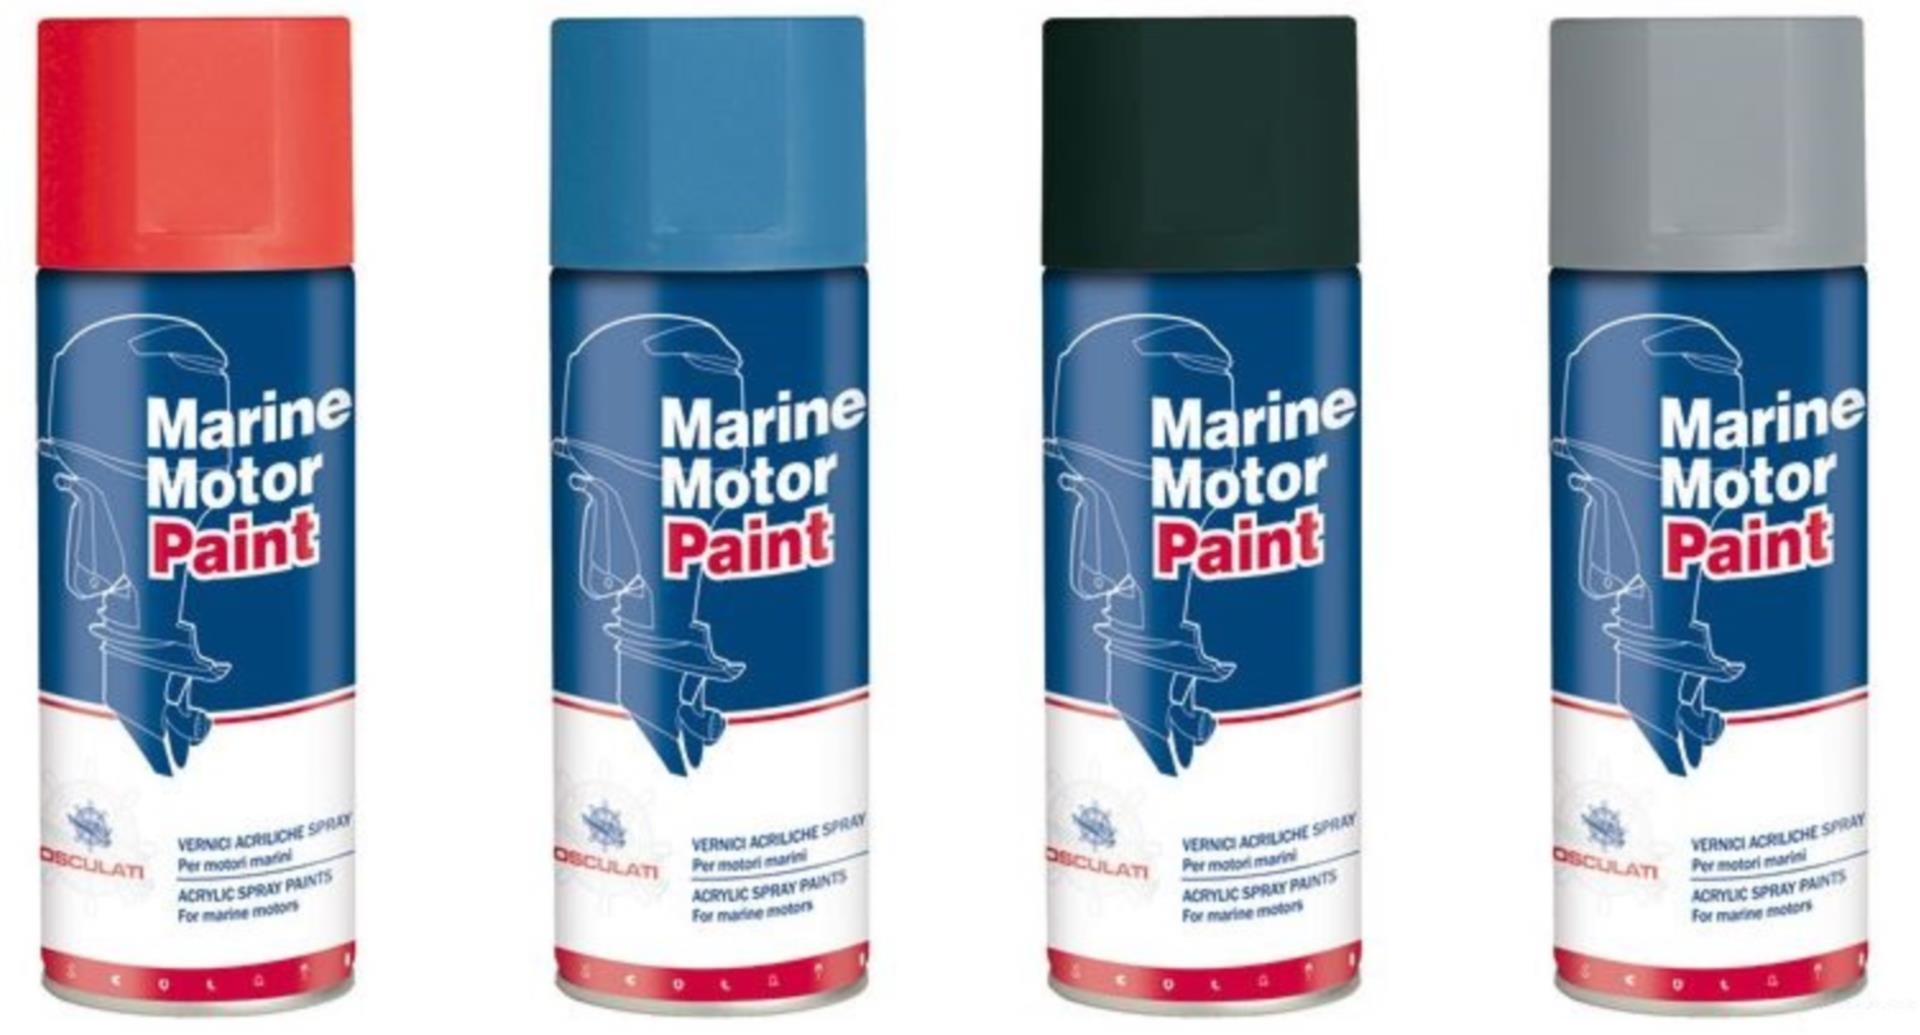 Acryl Spray für Volvo aquamatic grau bis 89, 400 ml